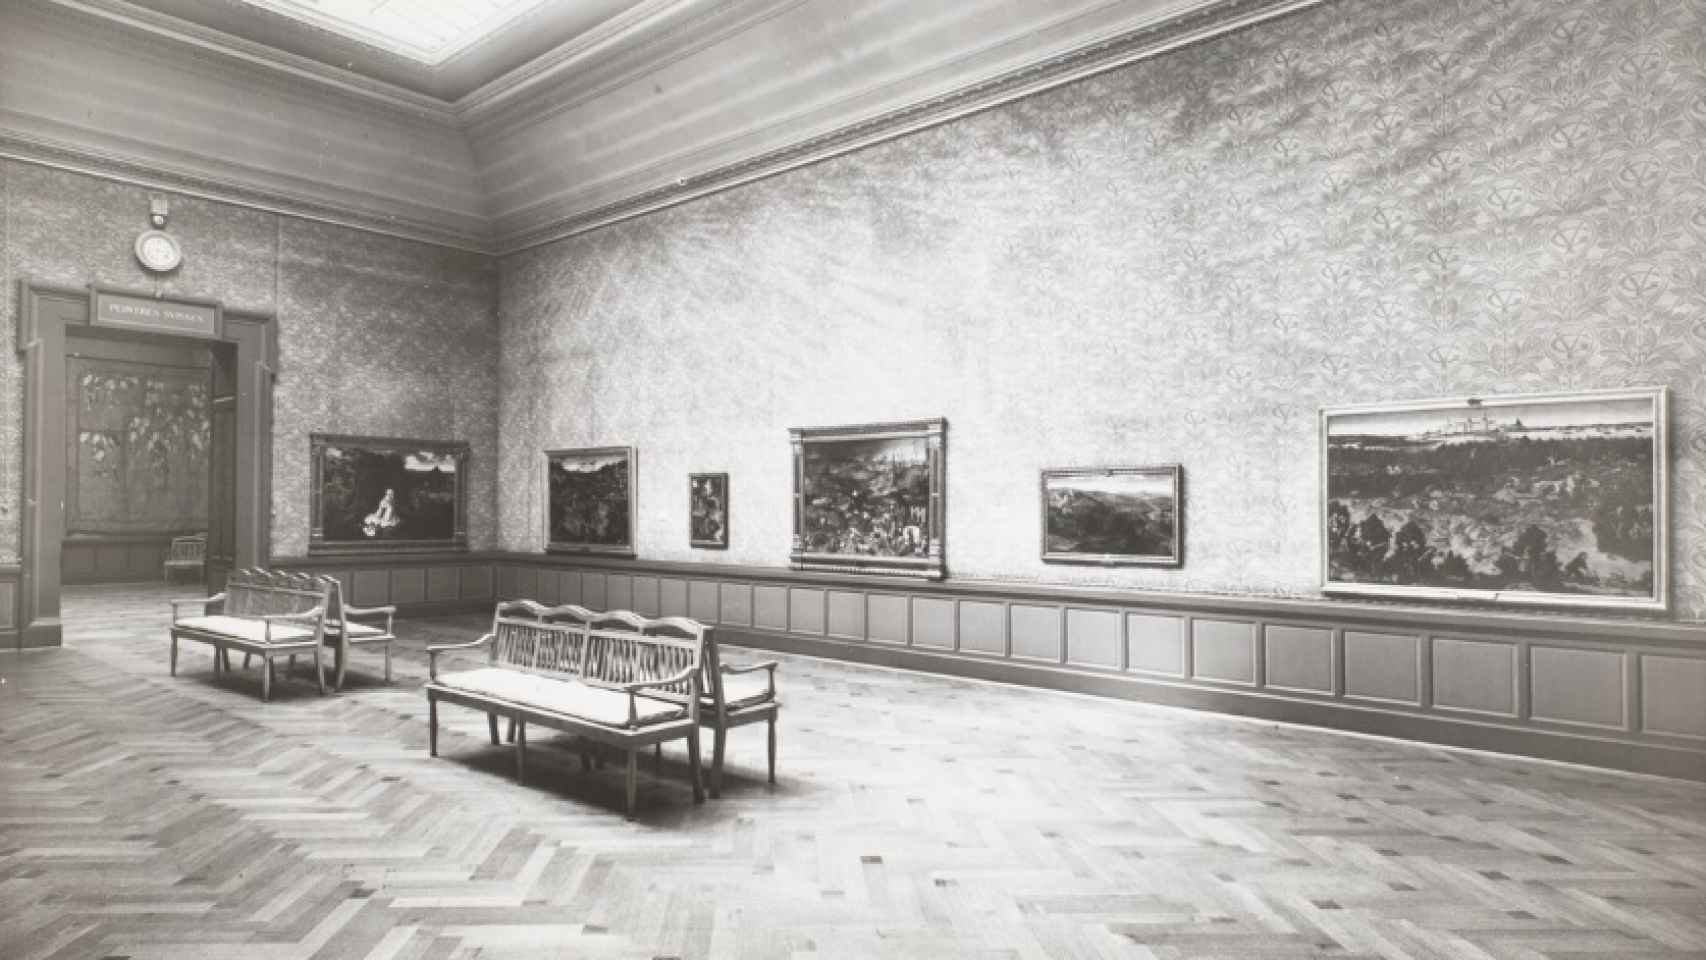 Obras maestras del Museo del Prado, en Ginebra, 1939. Bruegel el viejo, Patinir, Massys, El Bosco y Lucas Cranach el Viejo.